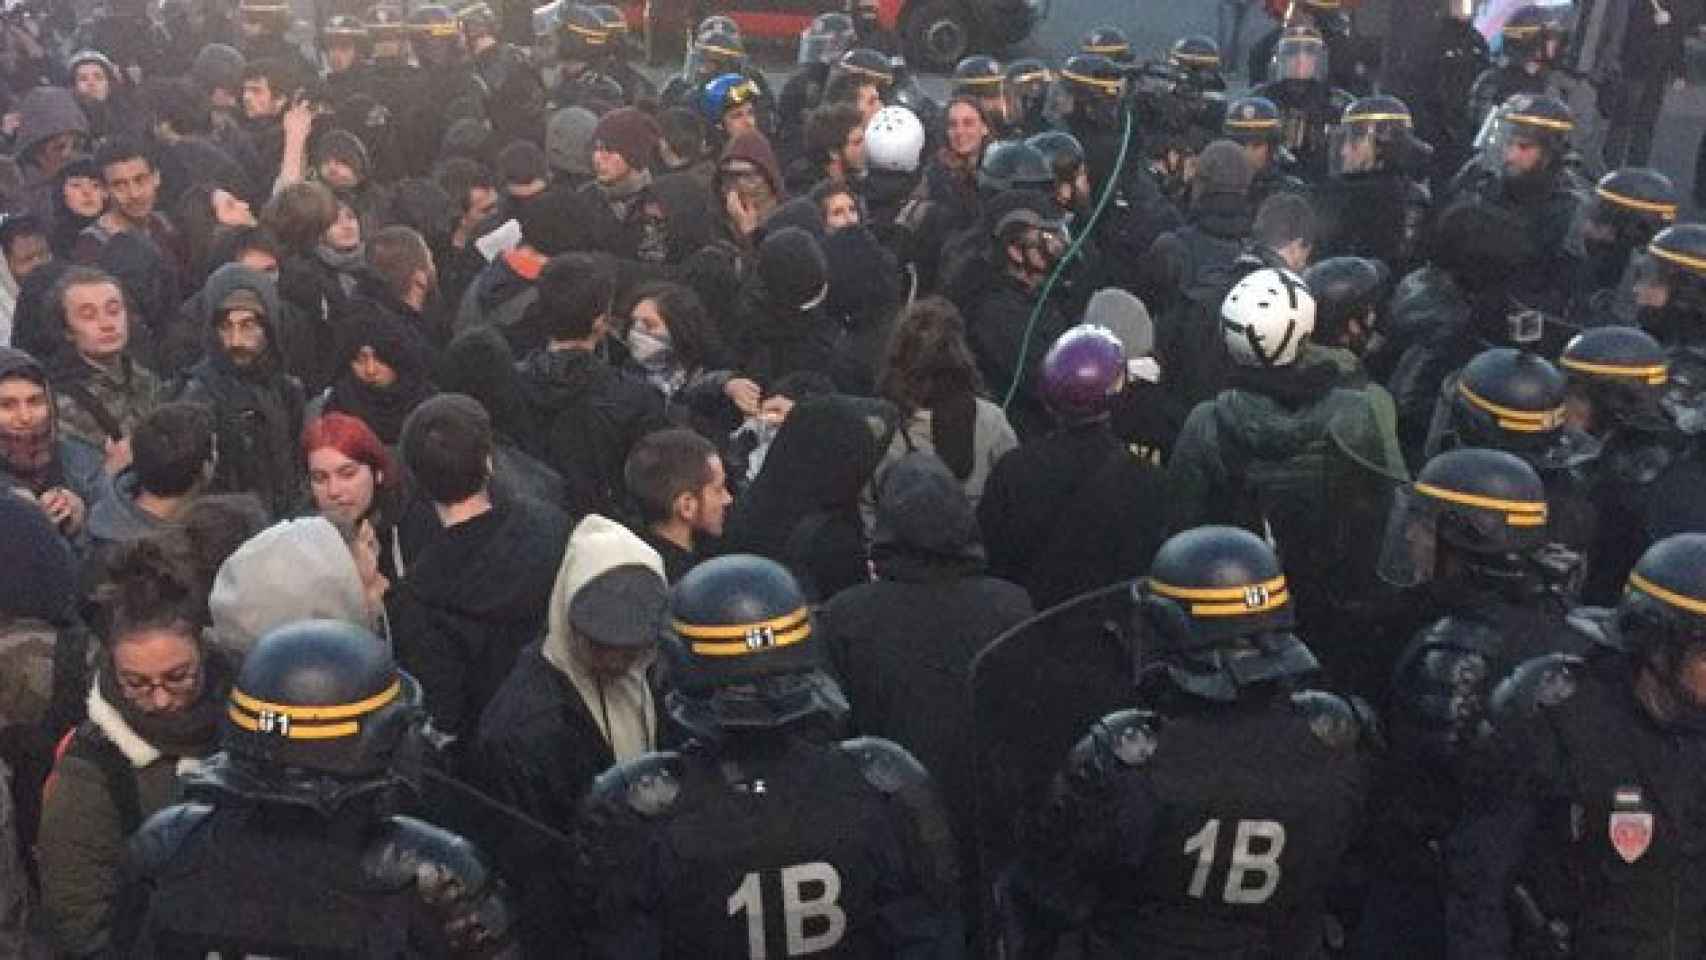 Efectivos antidisturbios controlan la protesta en París / @broderick